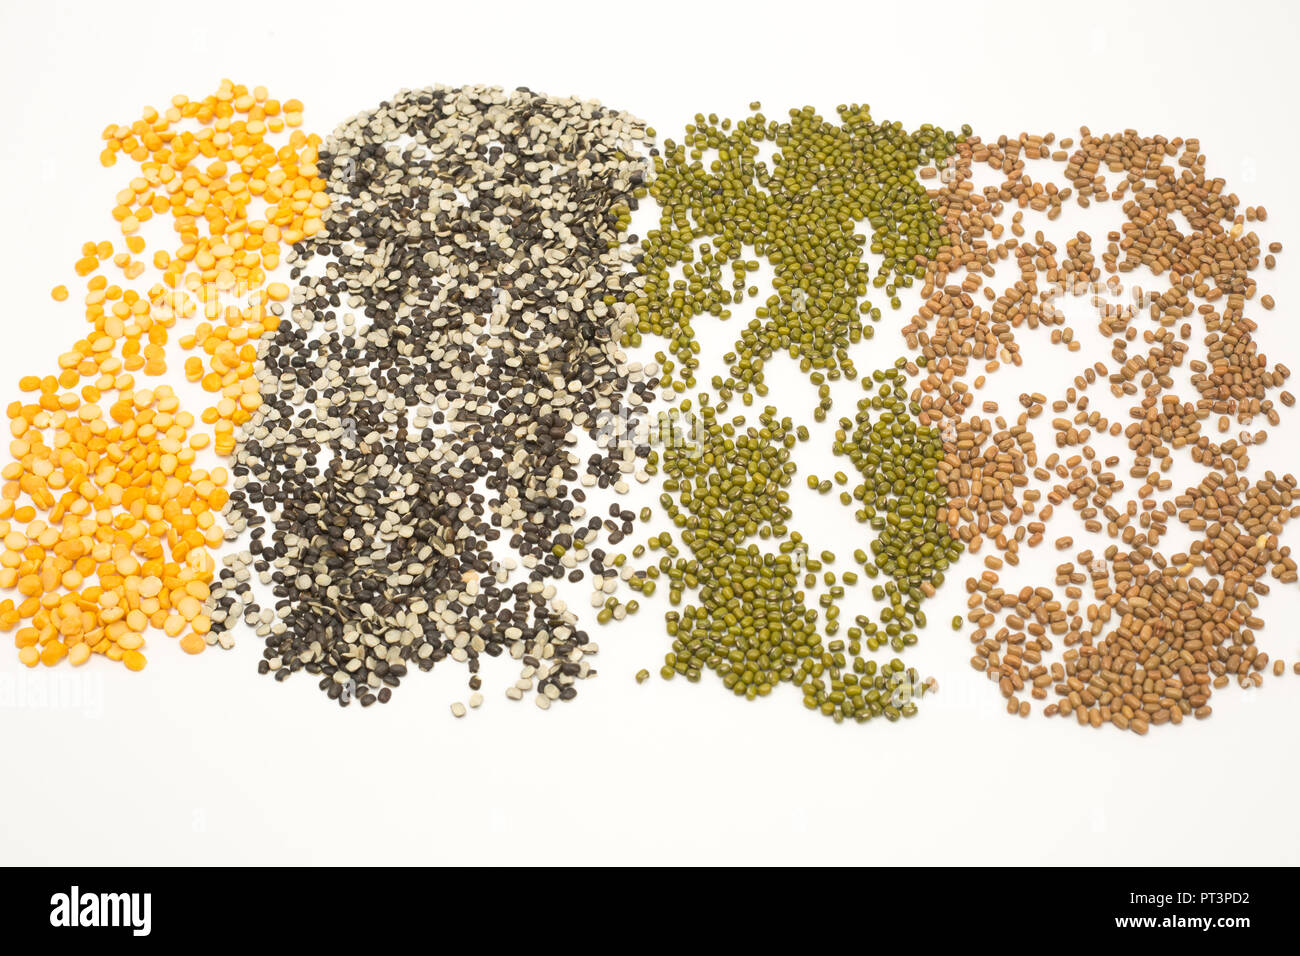 Sammlung von verschiedenen Samen grüne mung Dal, gelbe Spalterbsen, Split schwarze Linsen, Pigeon pea. Auf weissem Hintergrund. Stockfoto